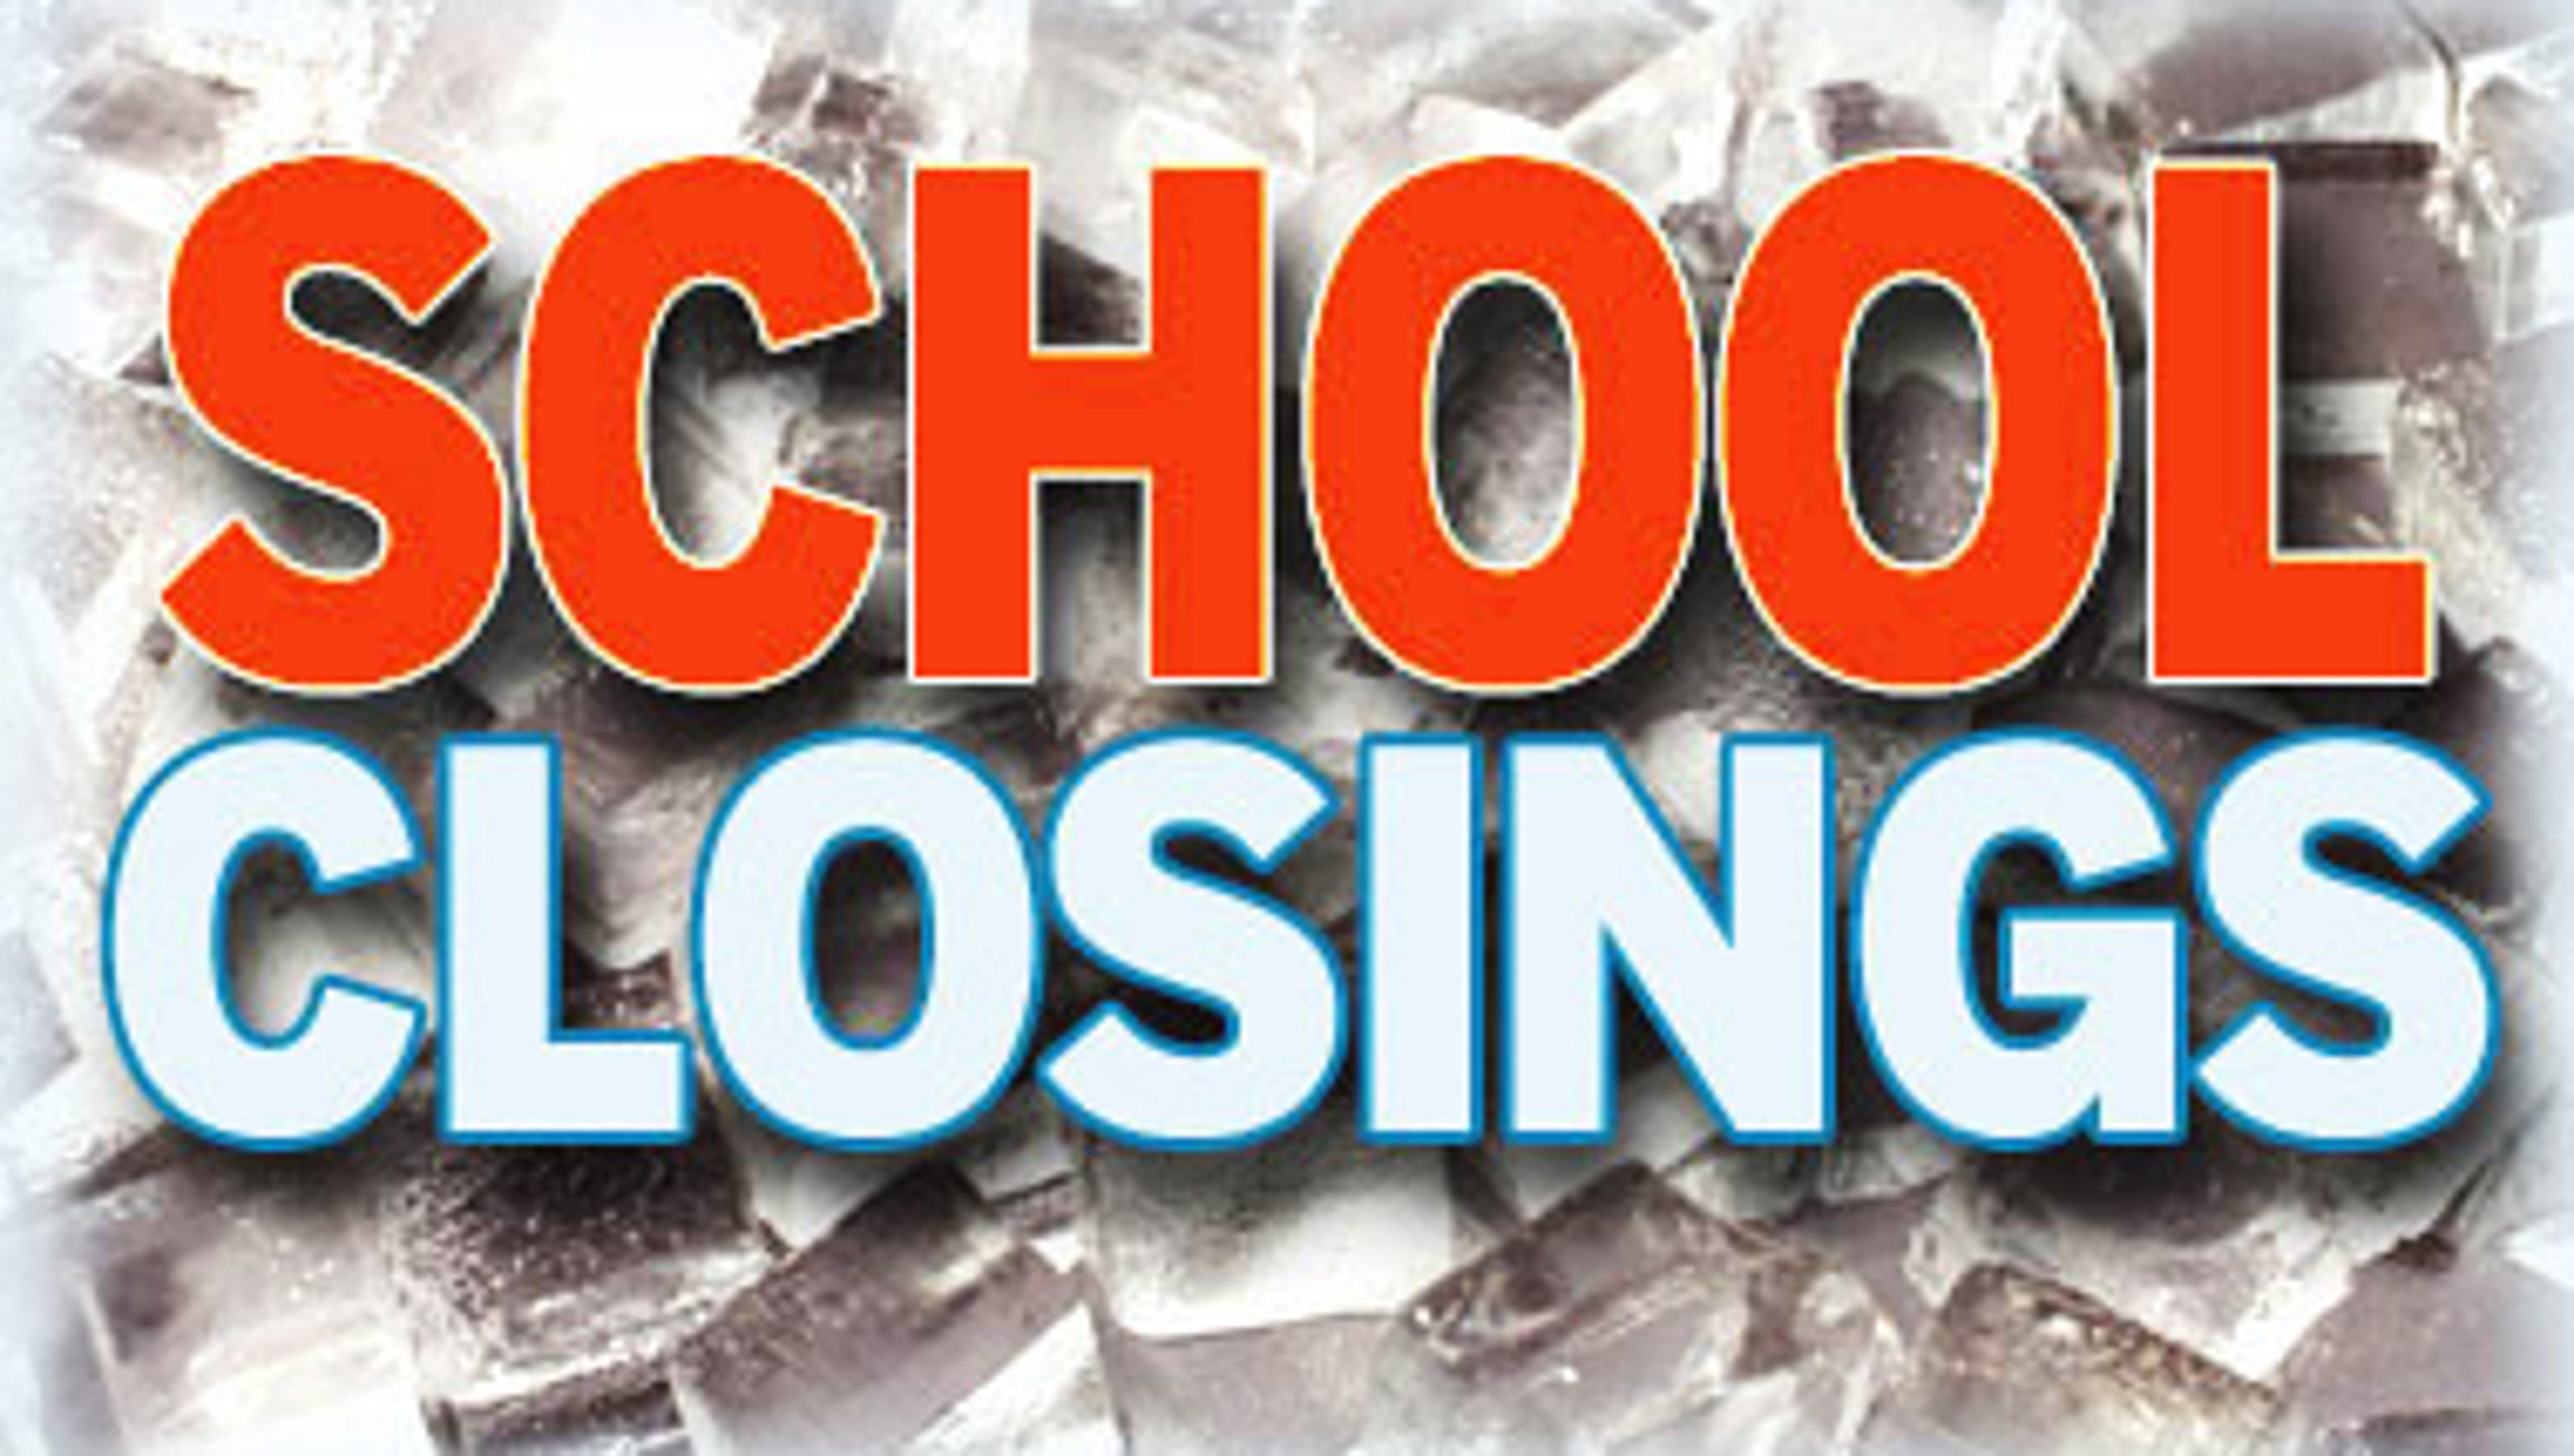 school closings in austin